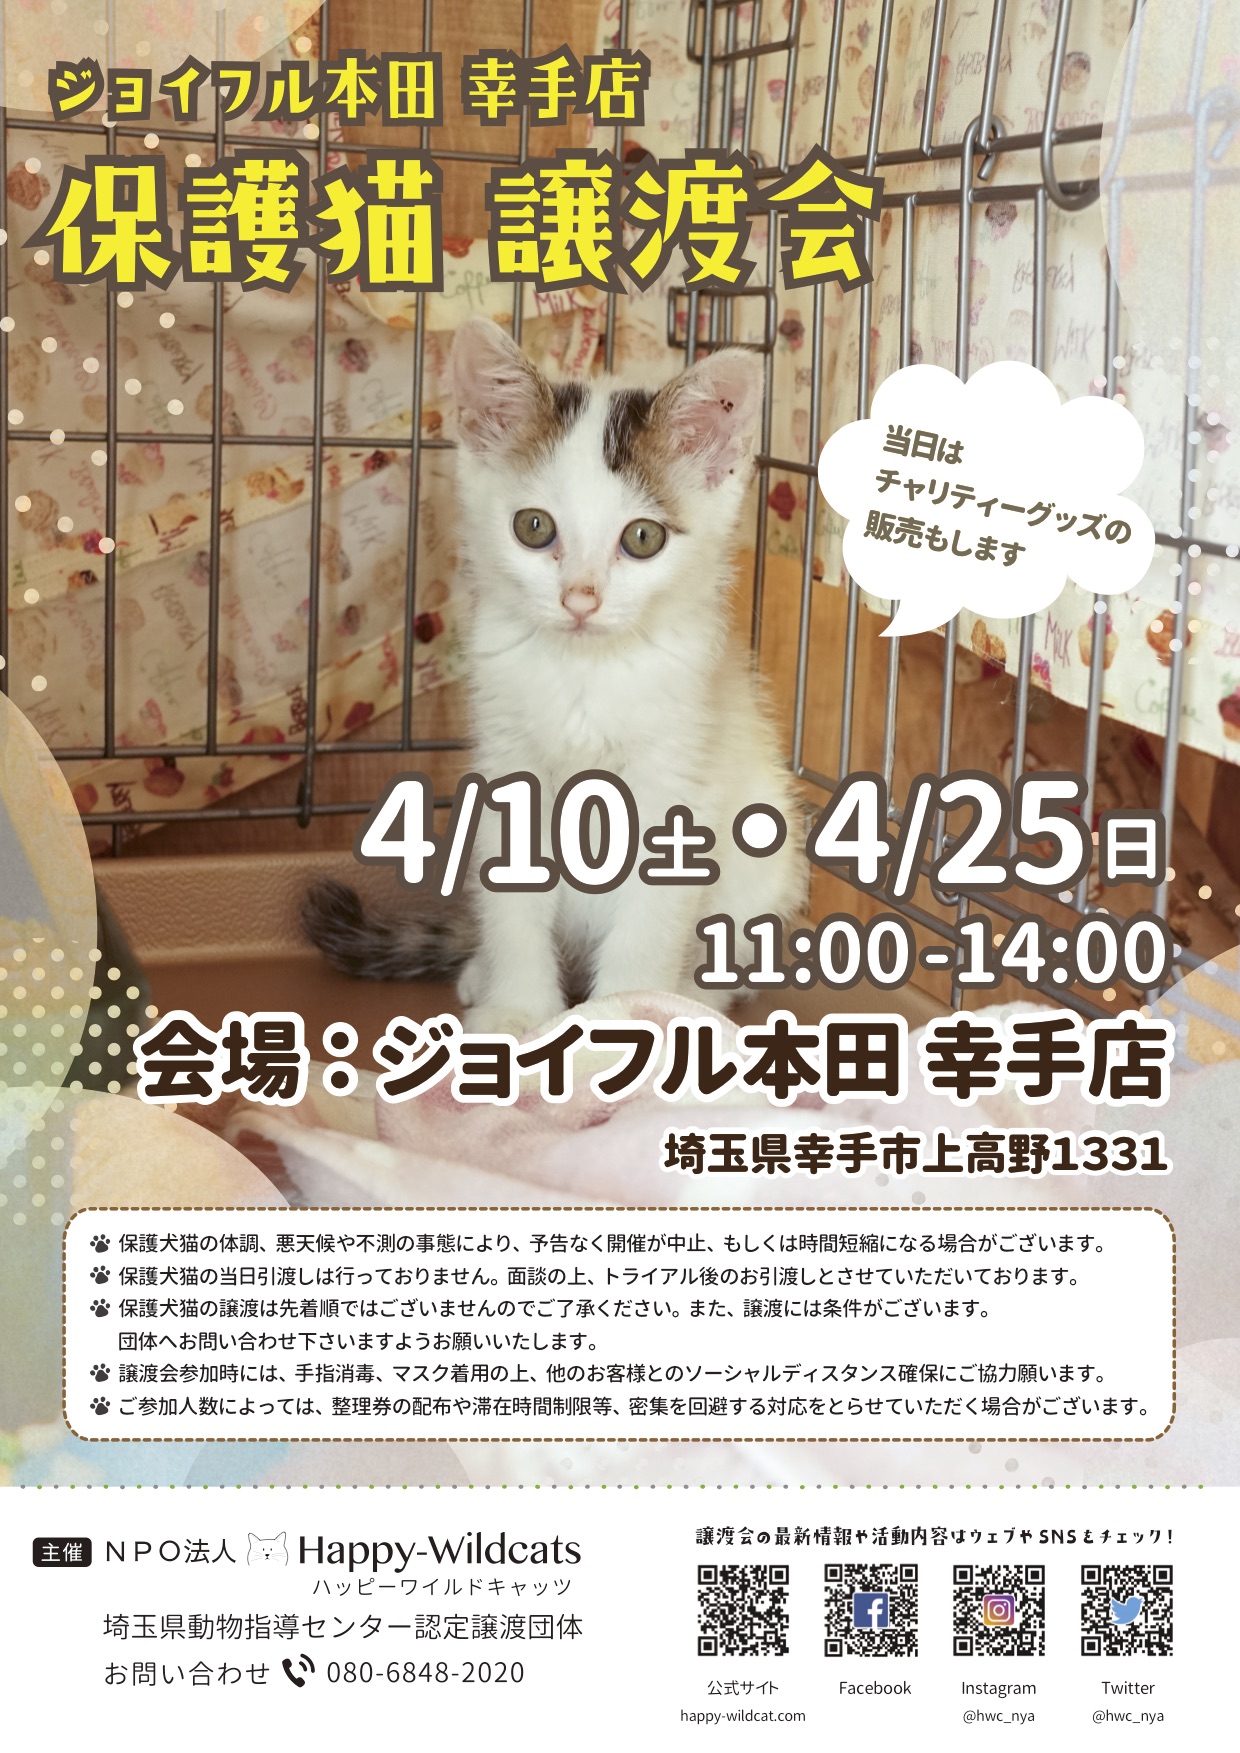 ジョイフル本田 幸手店にて保護猫譲渡会